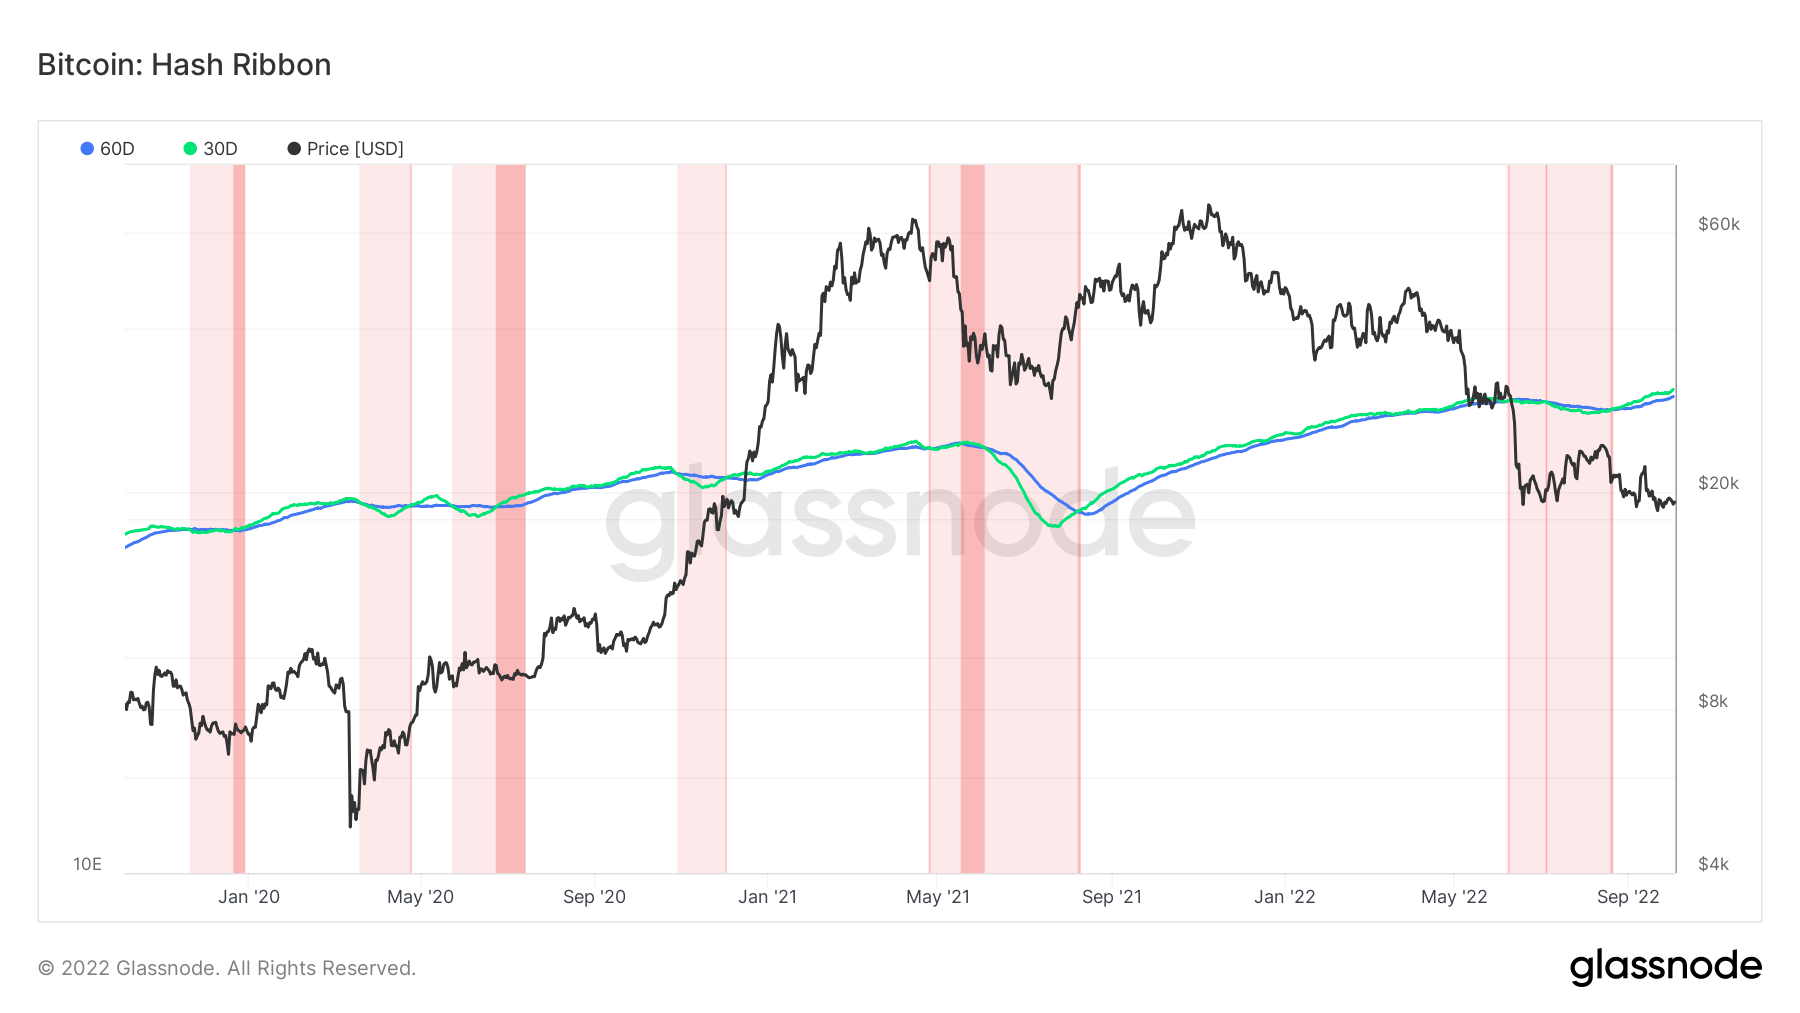 Bitcoin Hash Ribbon chart